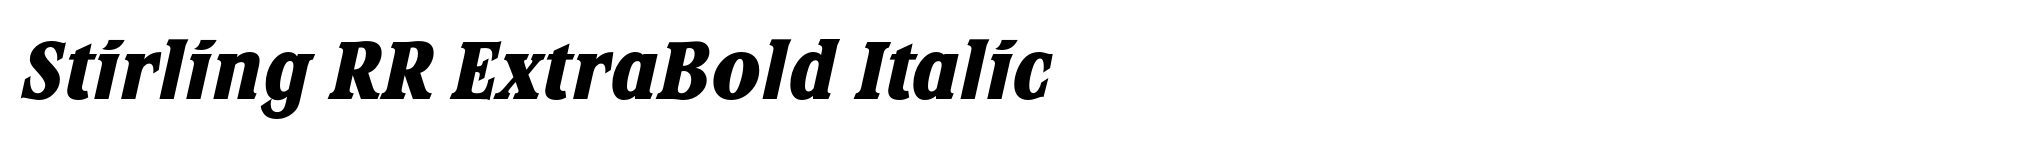 Stirling RR ExtraBold Italic image